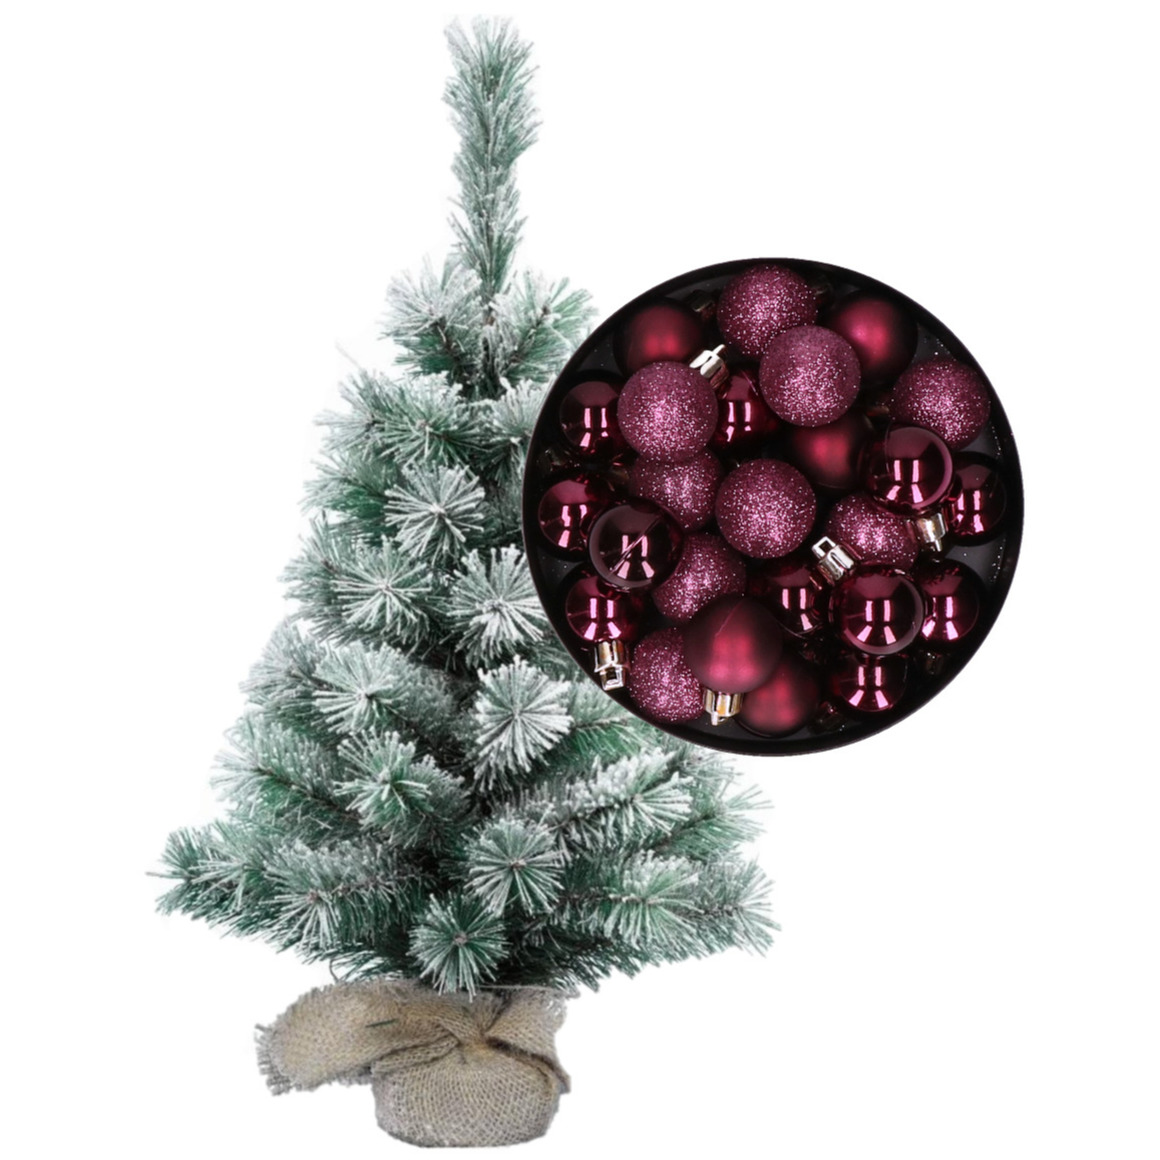 Besneeuwde mini kerstboom/kunst kerstboom 35 cm met kerstballen aubergine paars